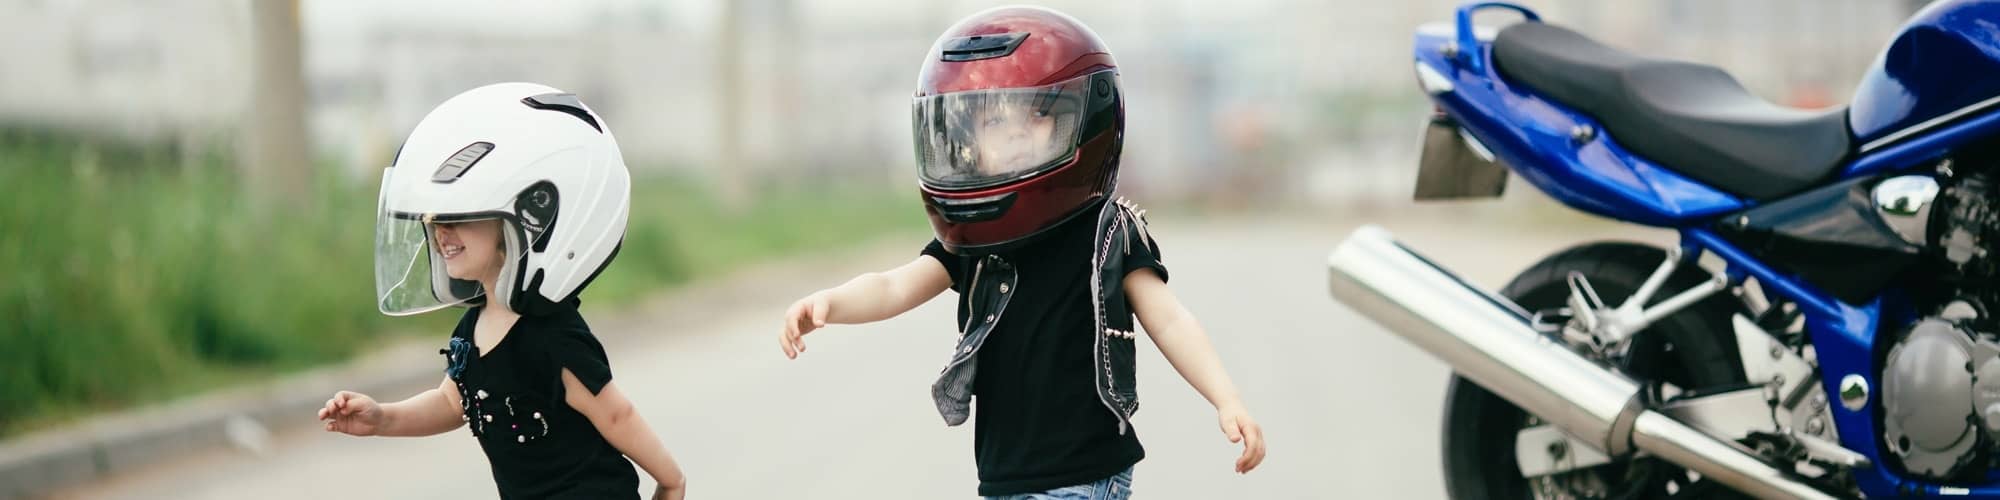 Itaca lucha Desconfianza Guía para elegir un casco de moto de niño